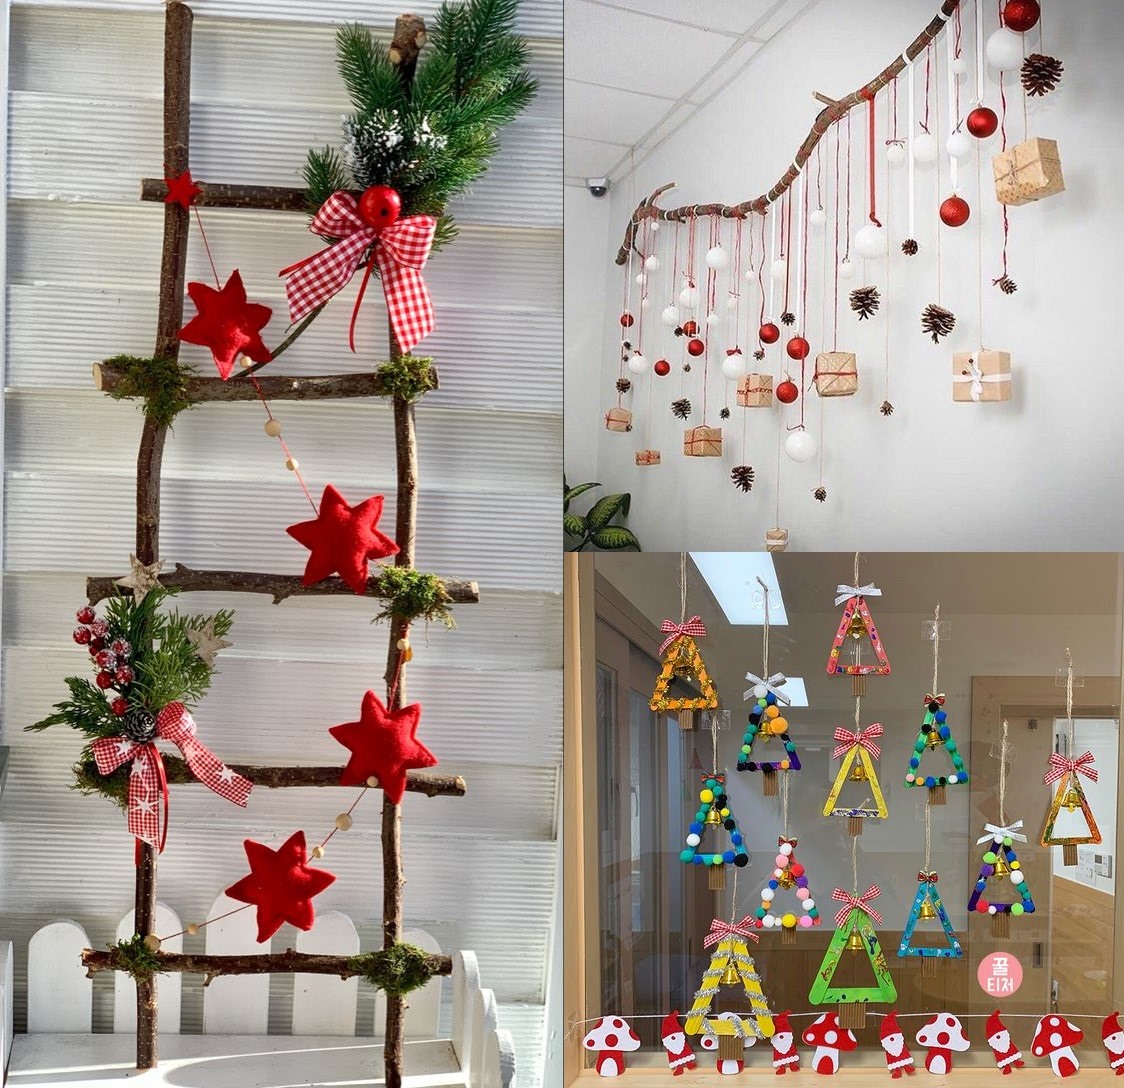 Ngoài ra, bạn có thể trang trí nhà bằng những món đồ liên tưởng đến Noel như: quả châu, đèn nháy, decal, ông già Noel... Đồ hoạ: M.H